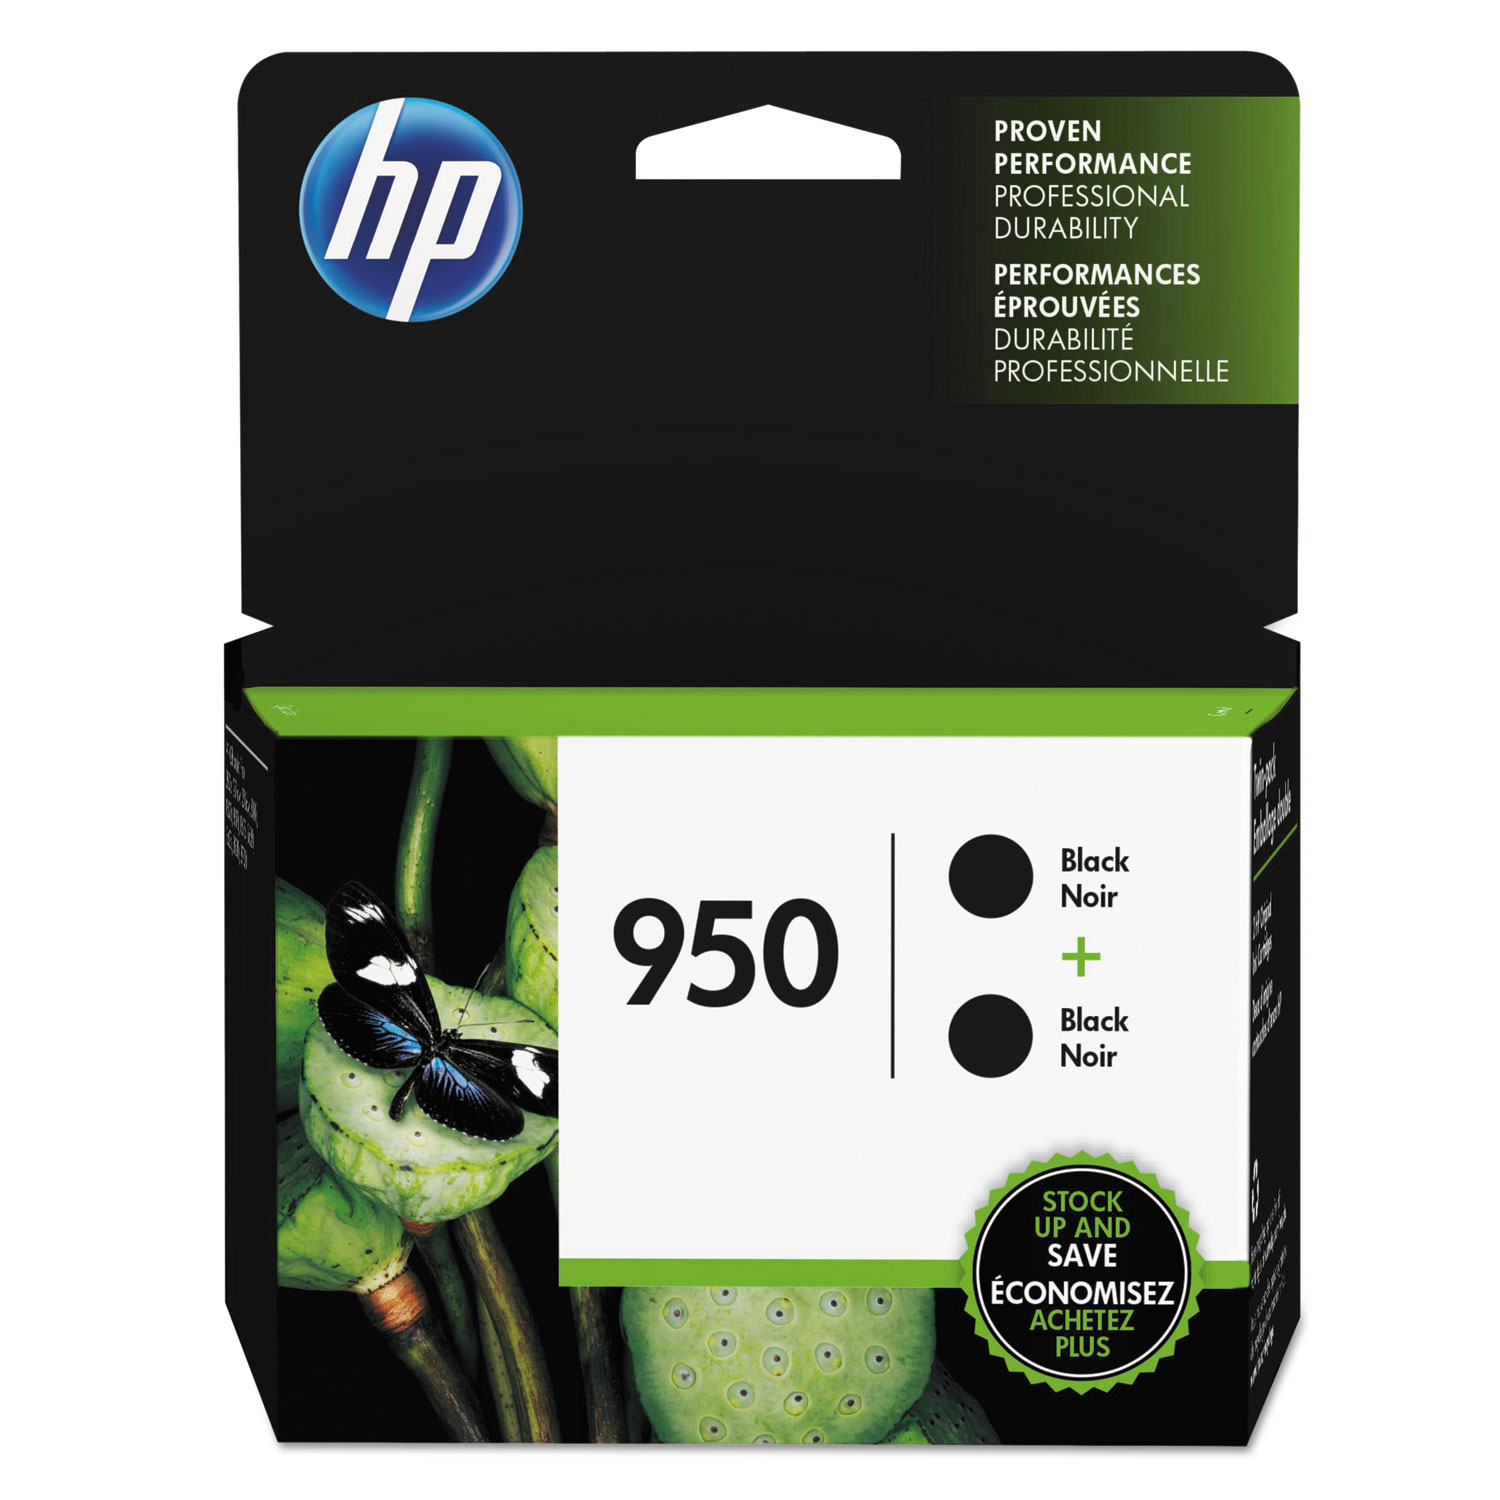  HP L0S28AN#140 HP 950, (L0S28AN) 2-pack Black Original Ink Cartridges (HEWL0S28AN) 